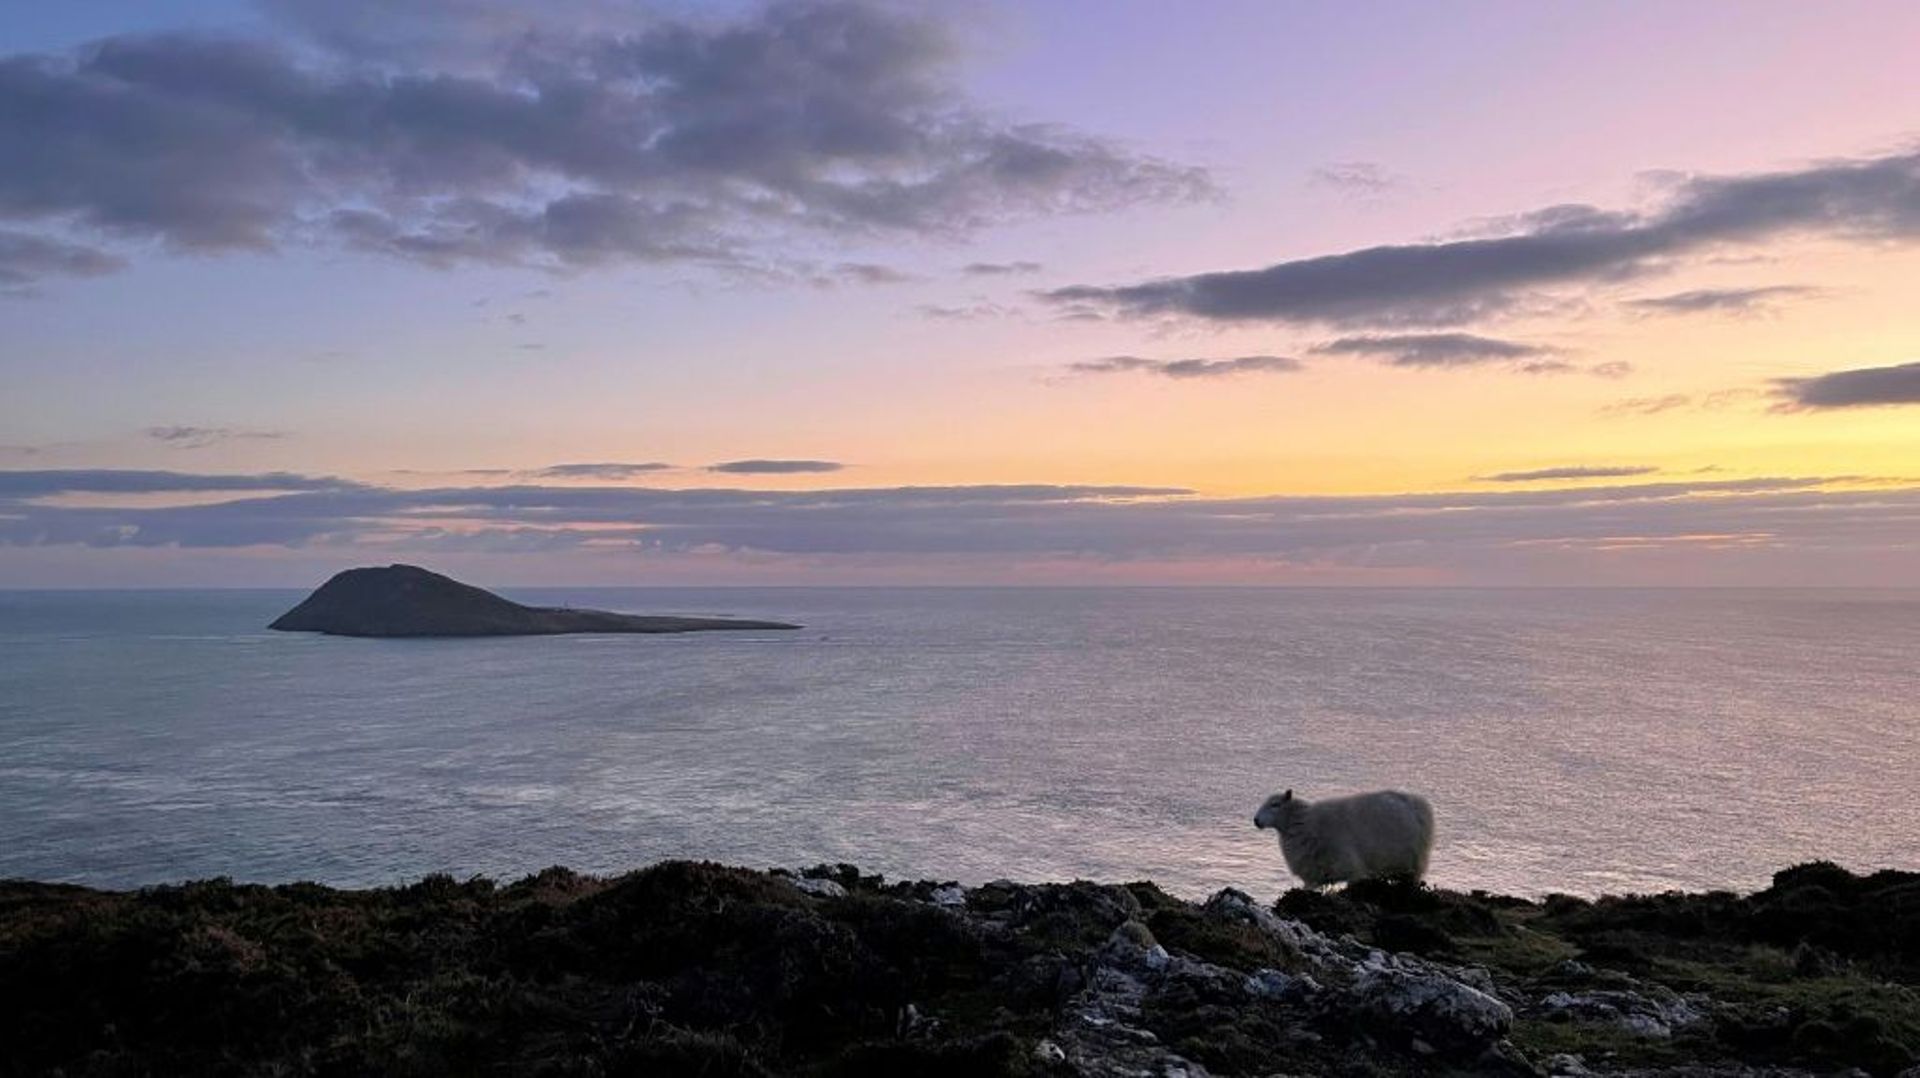 L’île d’Ynys Enlli vue depuis la côte ouest du Pays-de-Galles, le 26 février 2023